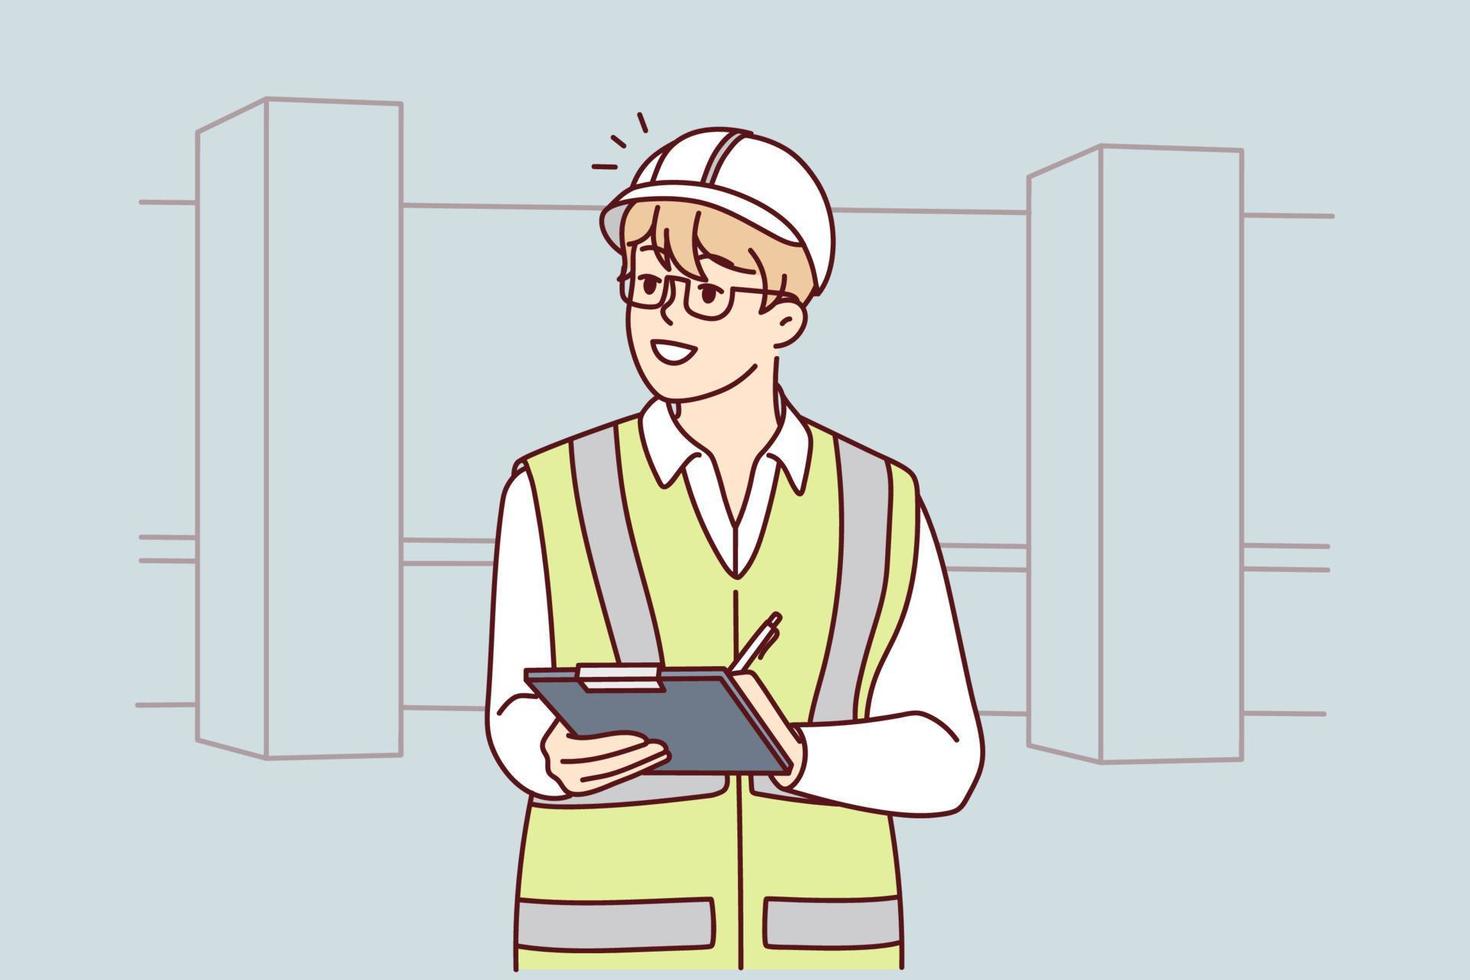 masculino ingeniero en uniforme y casco en construcción sitio. hombre profesional trabajando a al aire libre edificio lugar de trabajo. ocupación. vector ilustración.